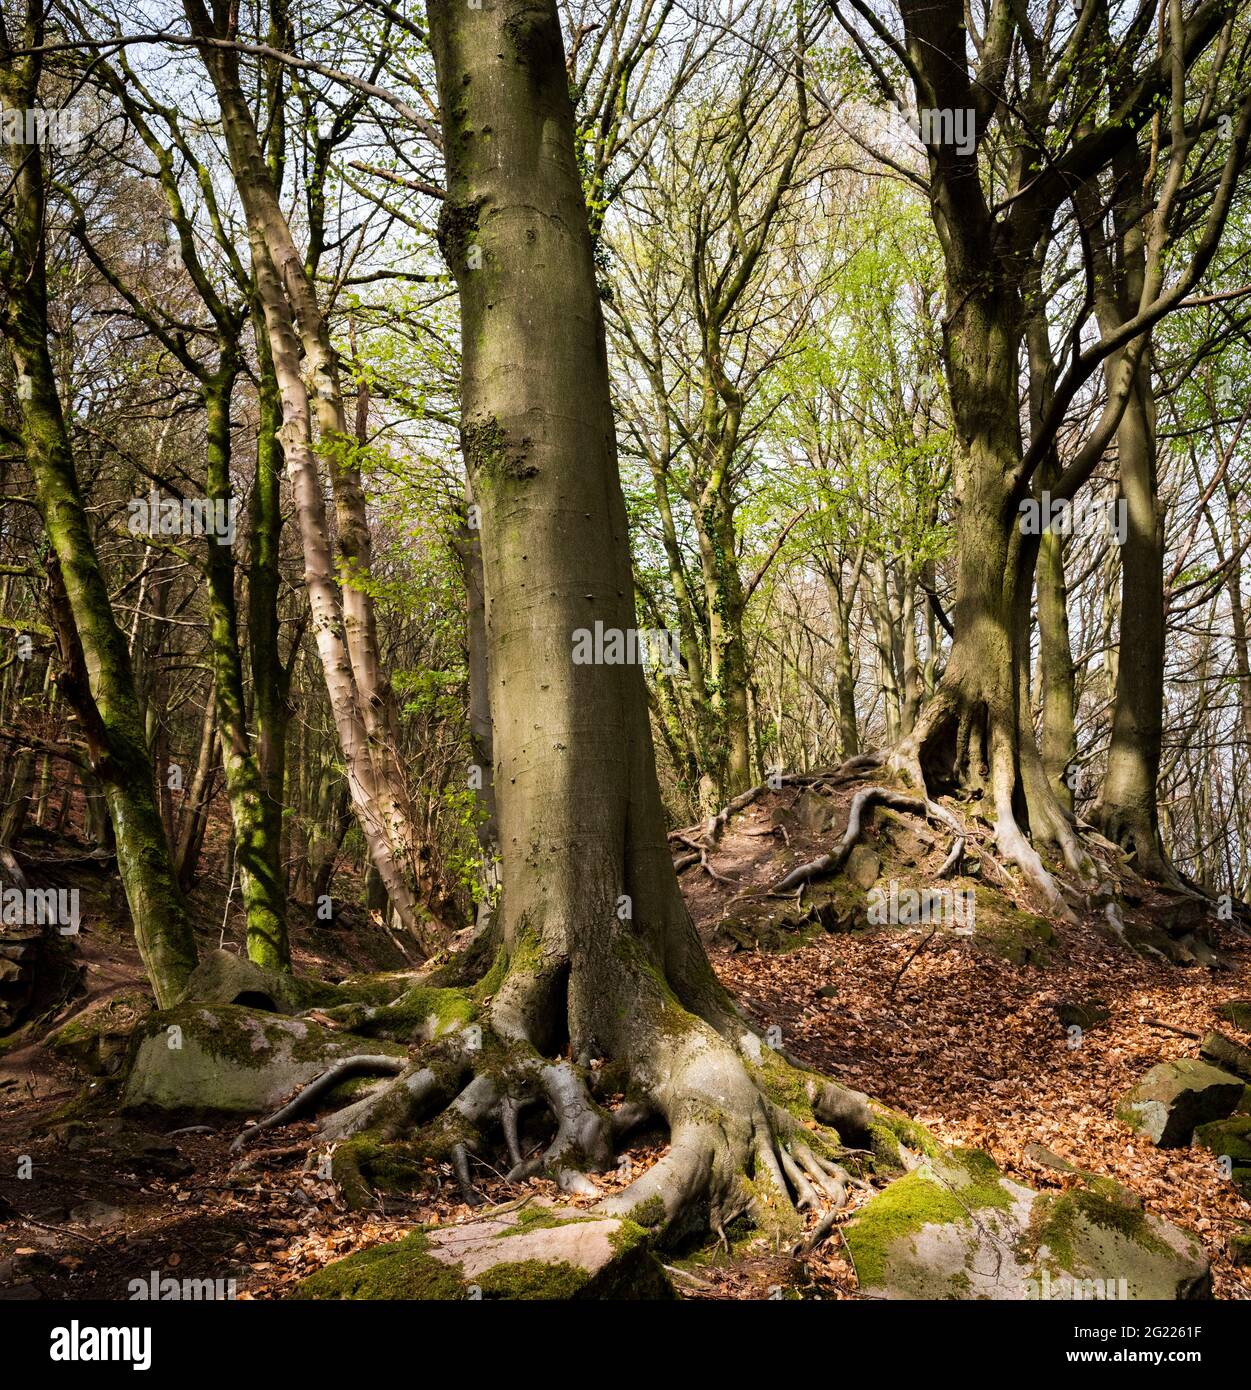 Pascolo di pecora incline 'il Dingle'. Bosco con alberi con radici aeree dell'albero. Derbyshire Peak District, Inghilterra, Regno Unito Foto Stock